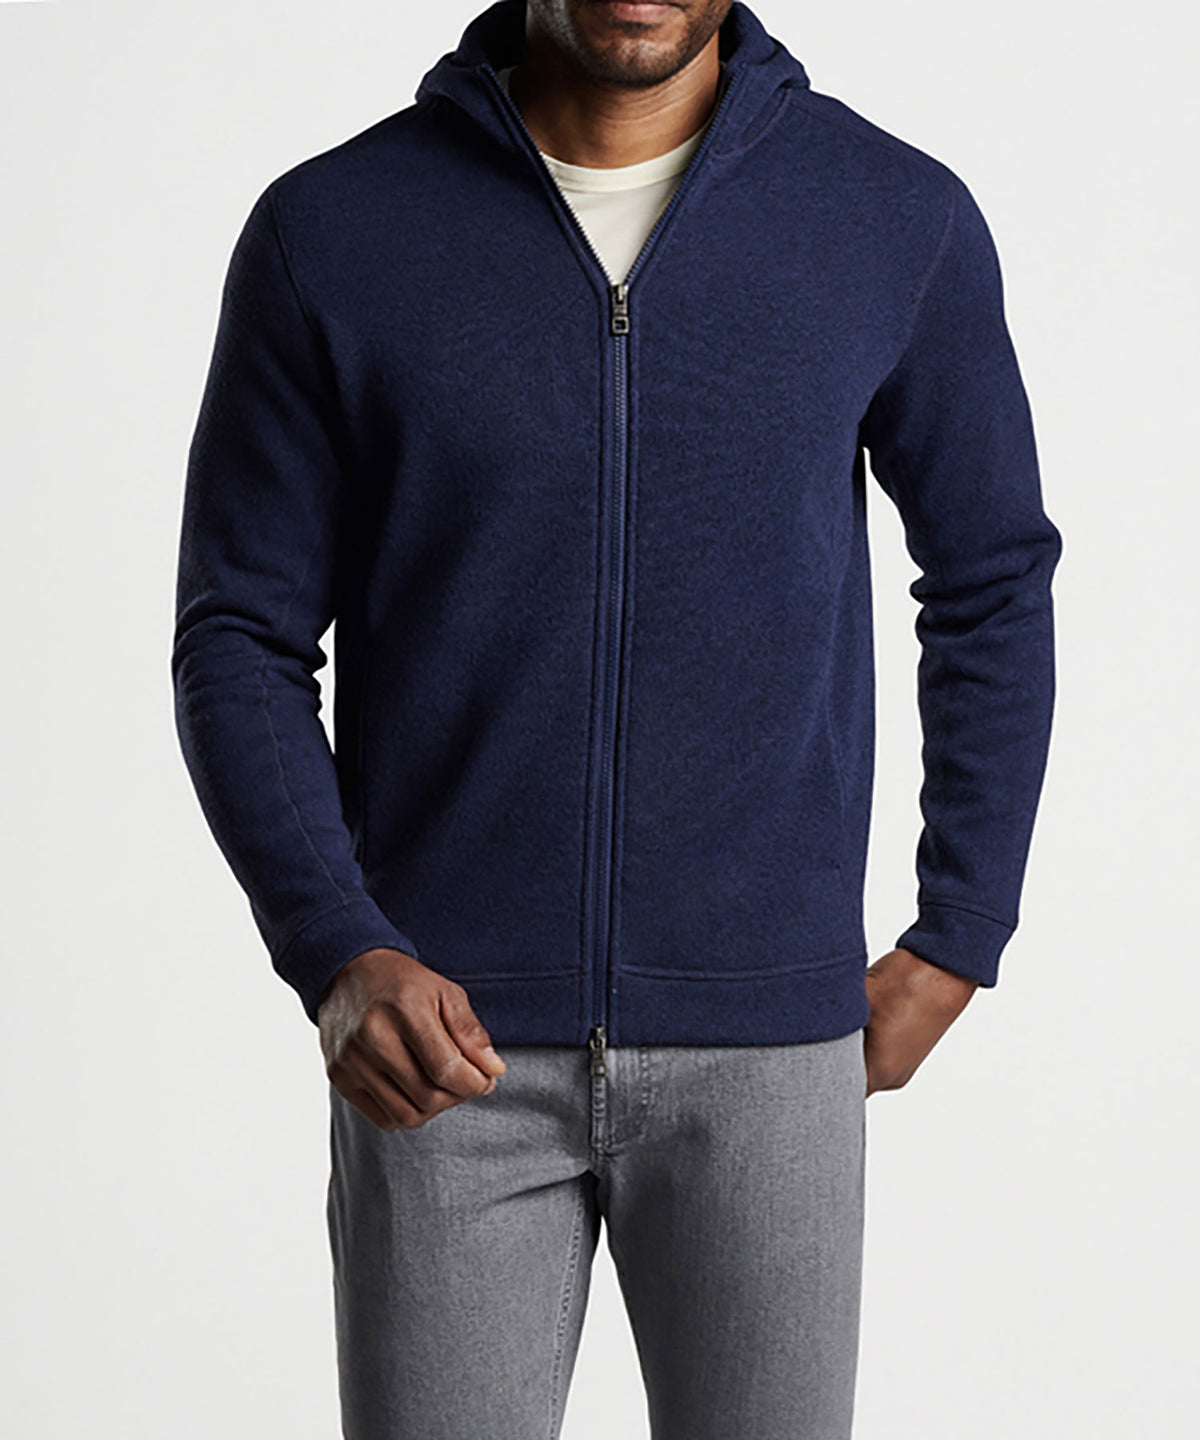 Peter Millar Sweater Fleece Full Zip Hoodie, Men's Big & Tall